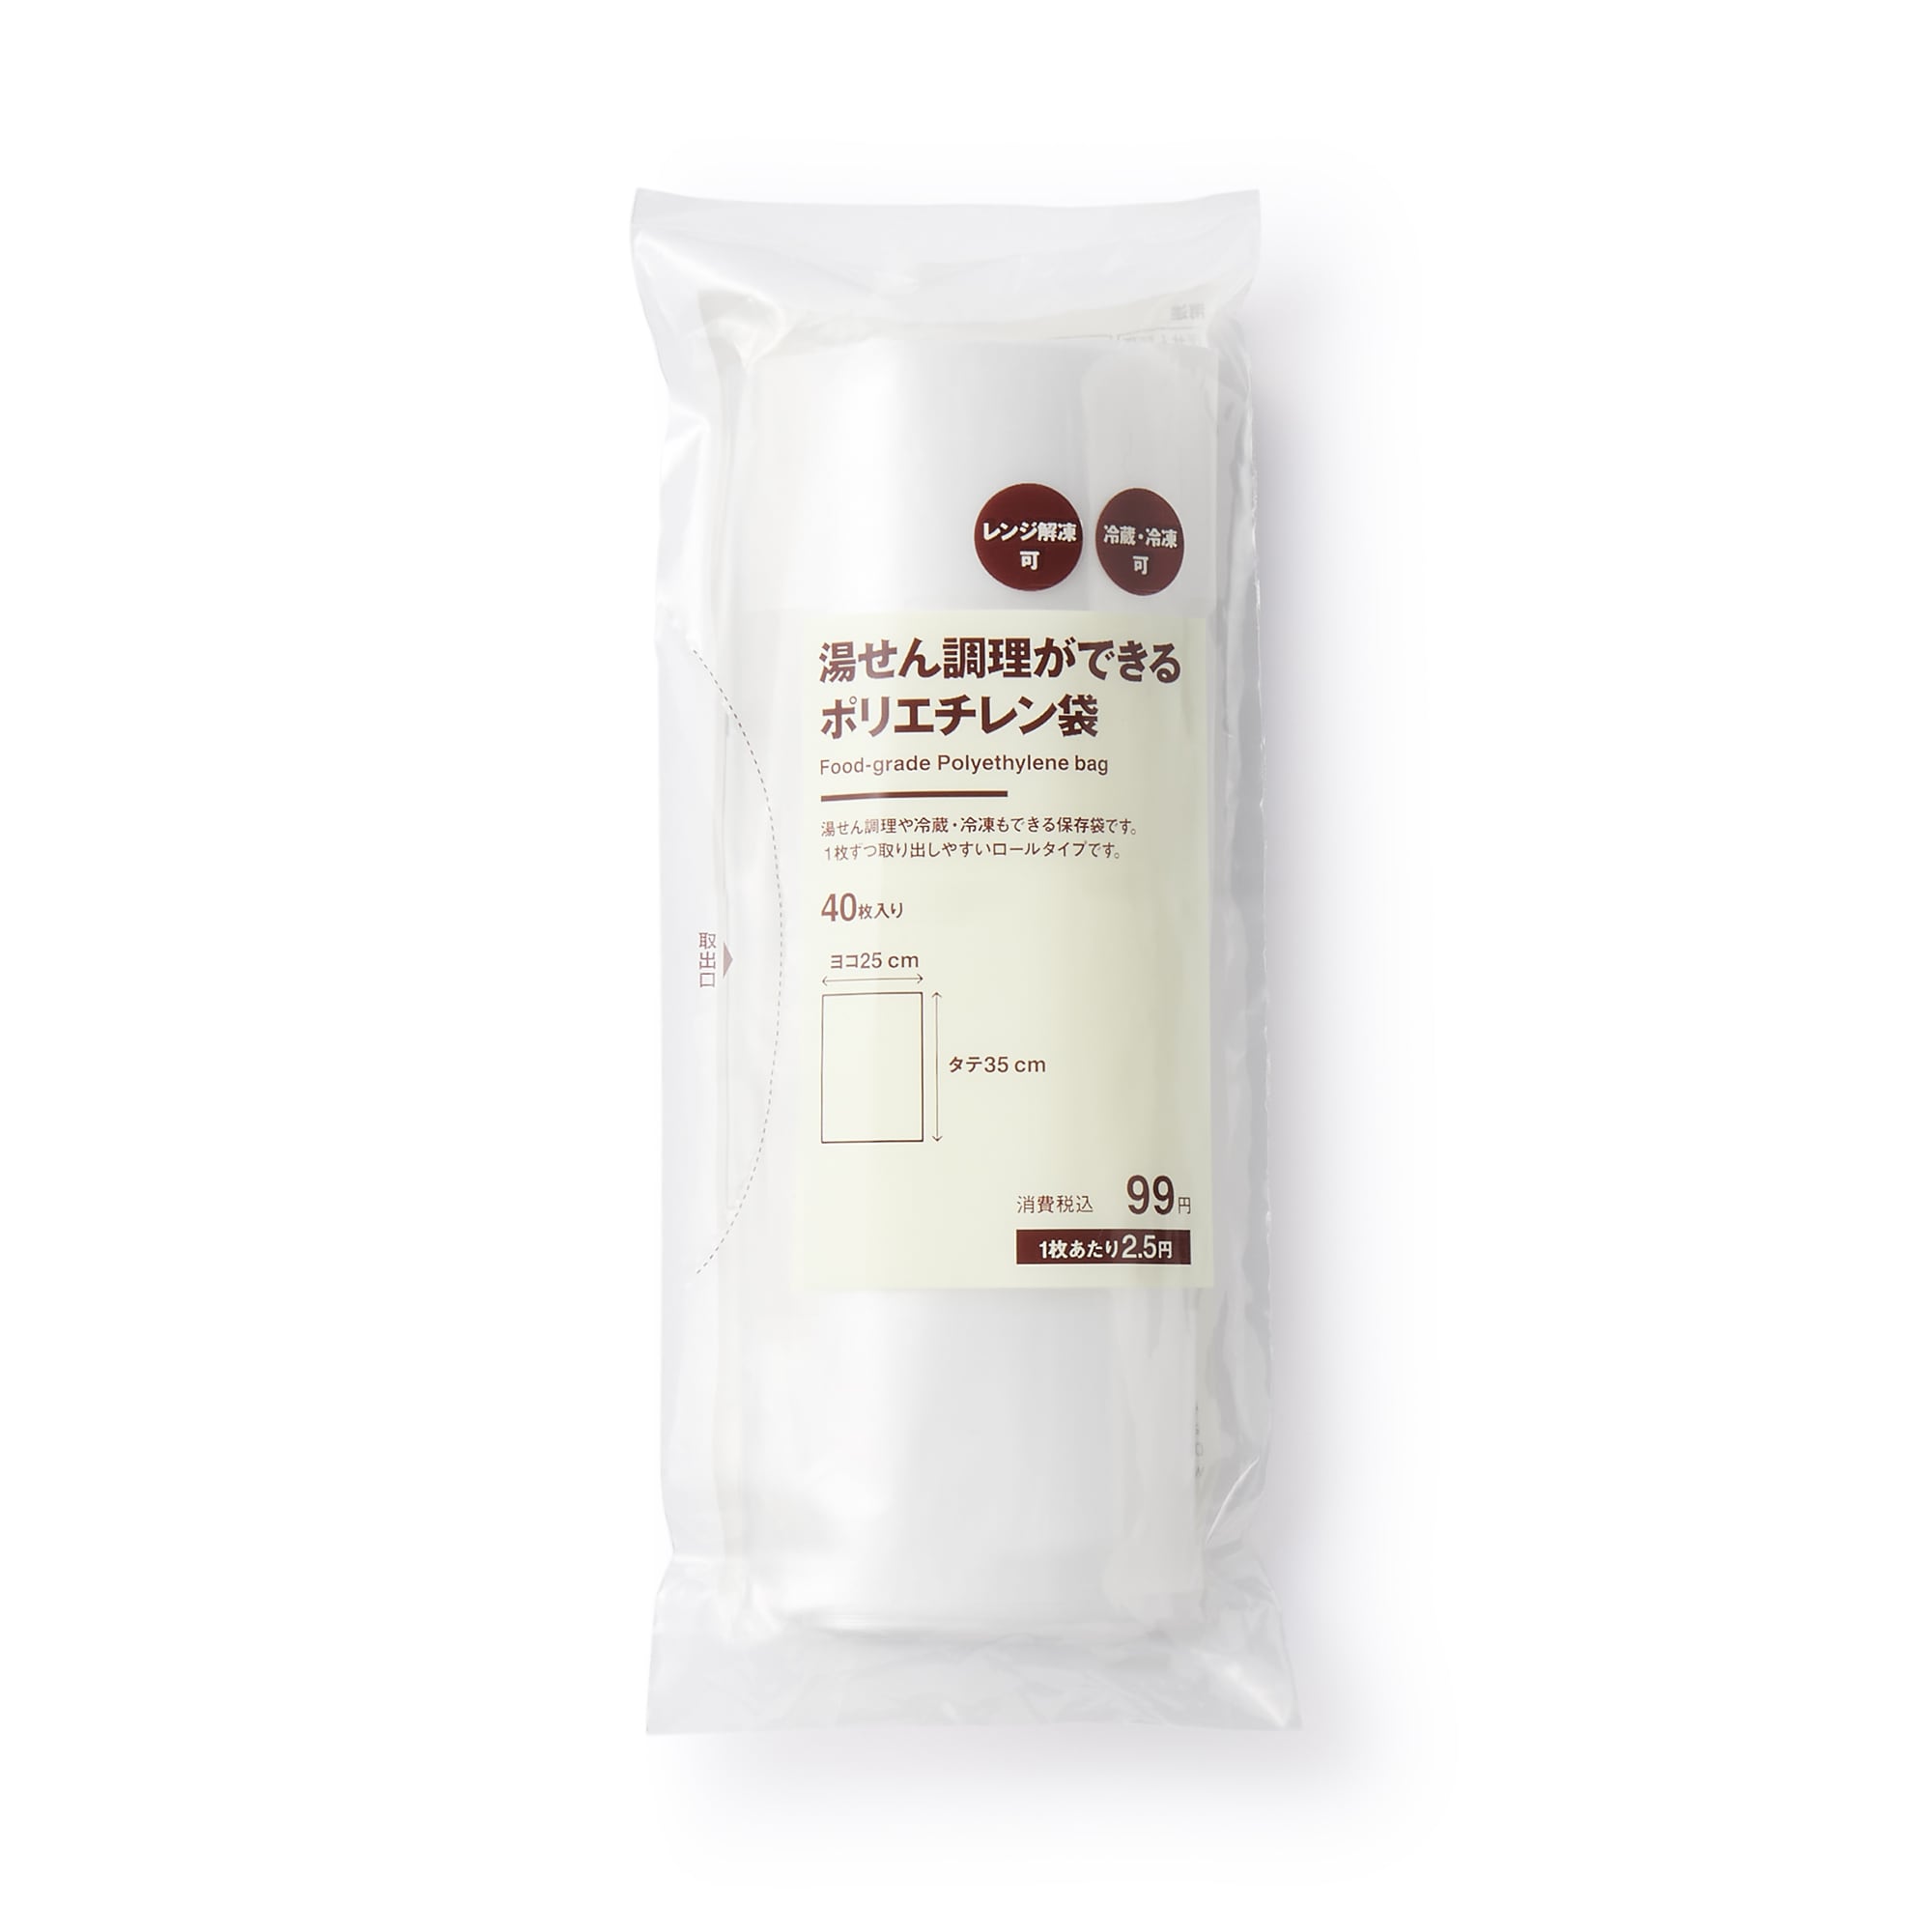 무인양품 일본 중탕 가능 폴리에틸렌 백